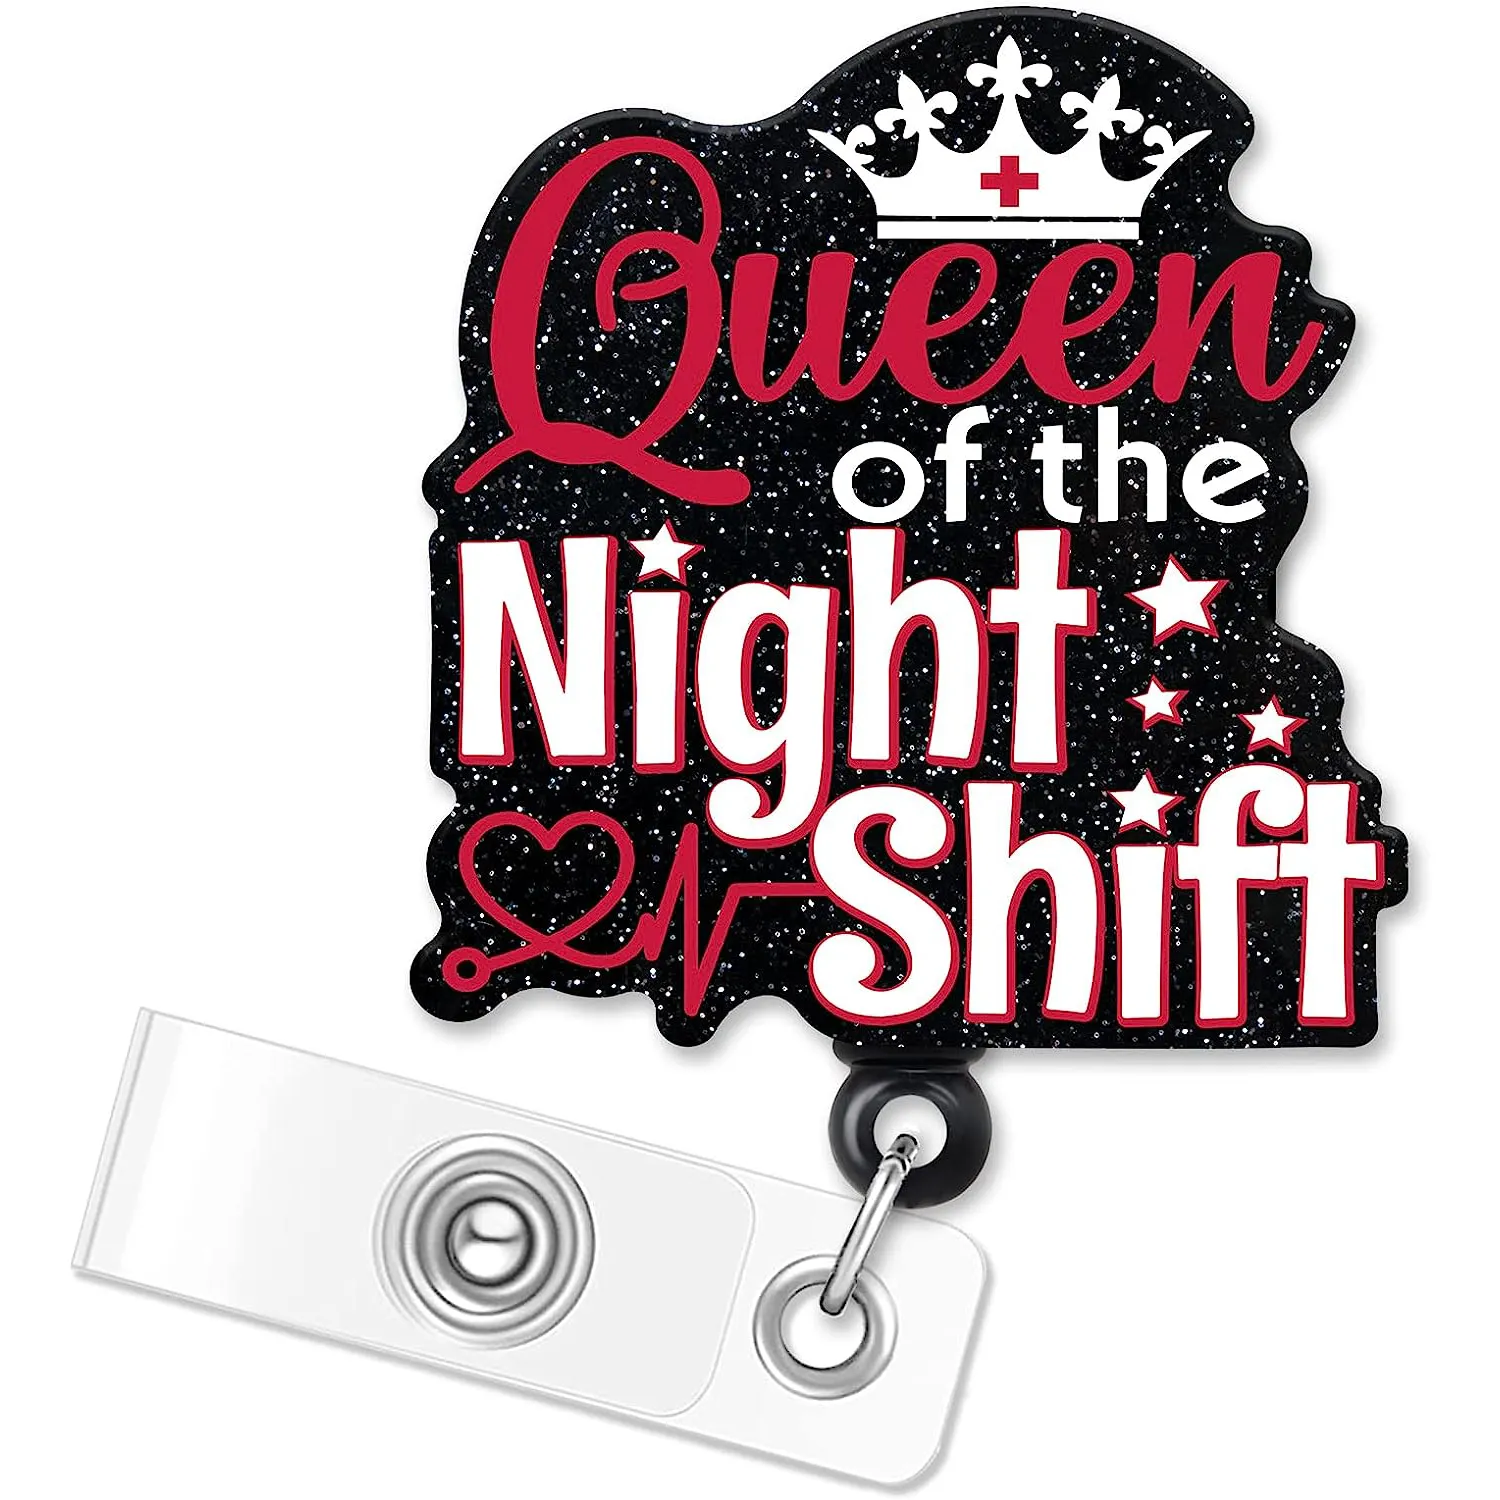 RTS Queen Of The Night Shift rol lencana kilau hitam yang dapat ditarik dengan penjepit buaya penjepit Id menyenangkan rol lencana pemegang